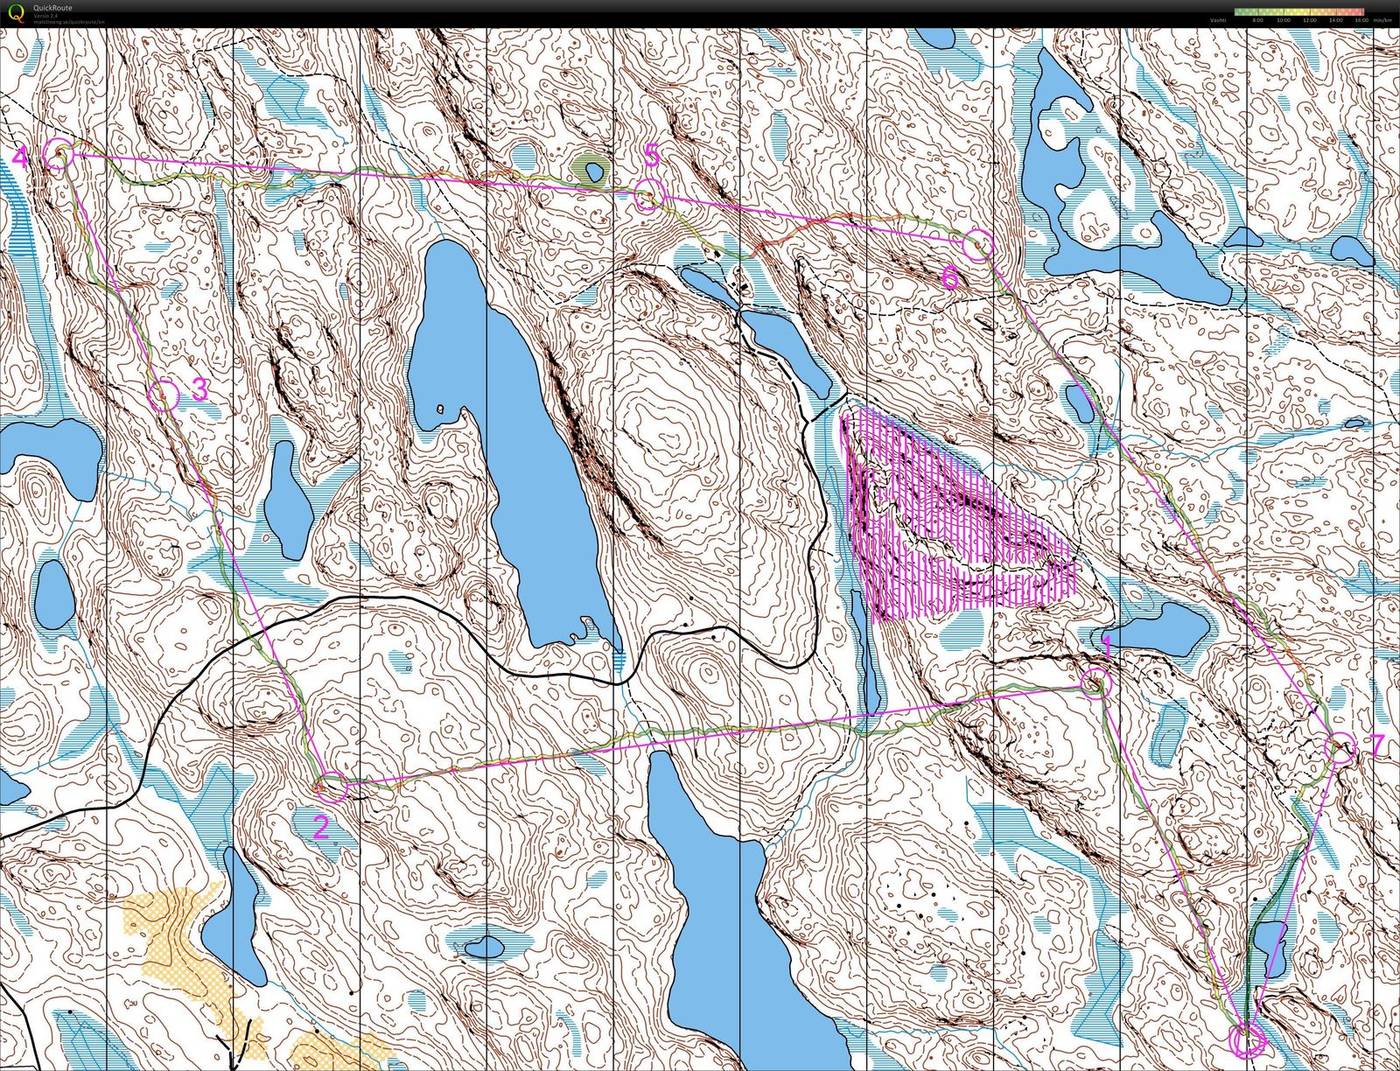 Isojärven kansallispuisto (28/09/2015)